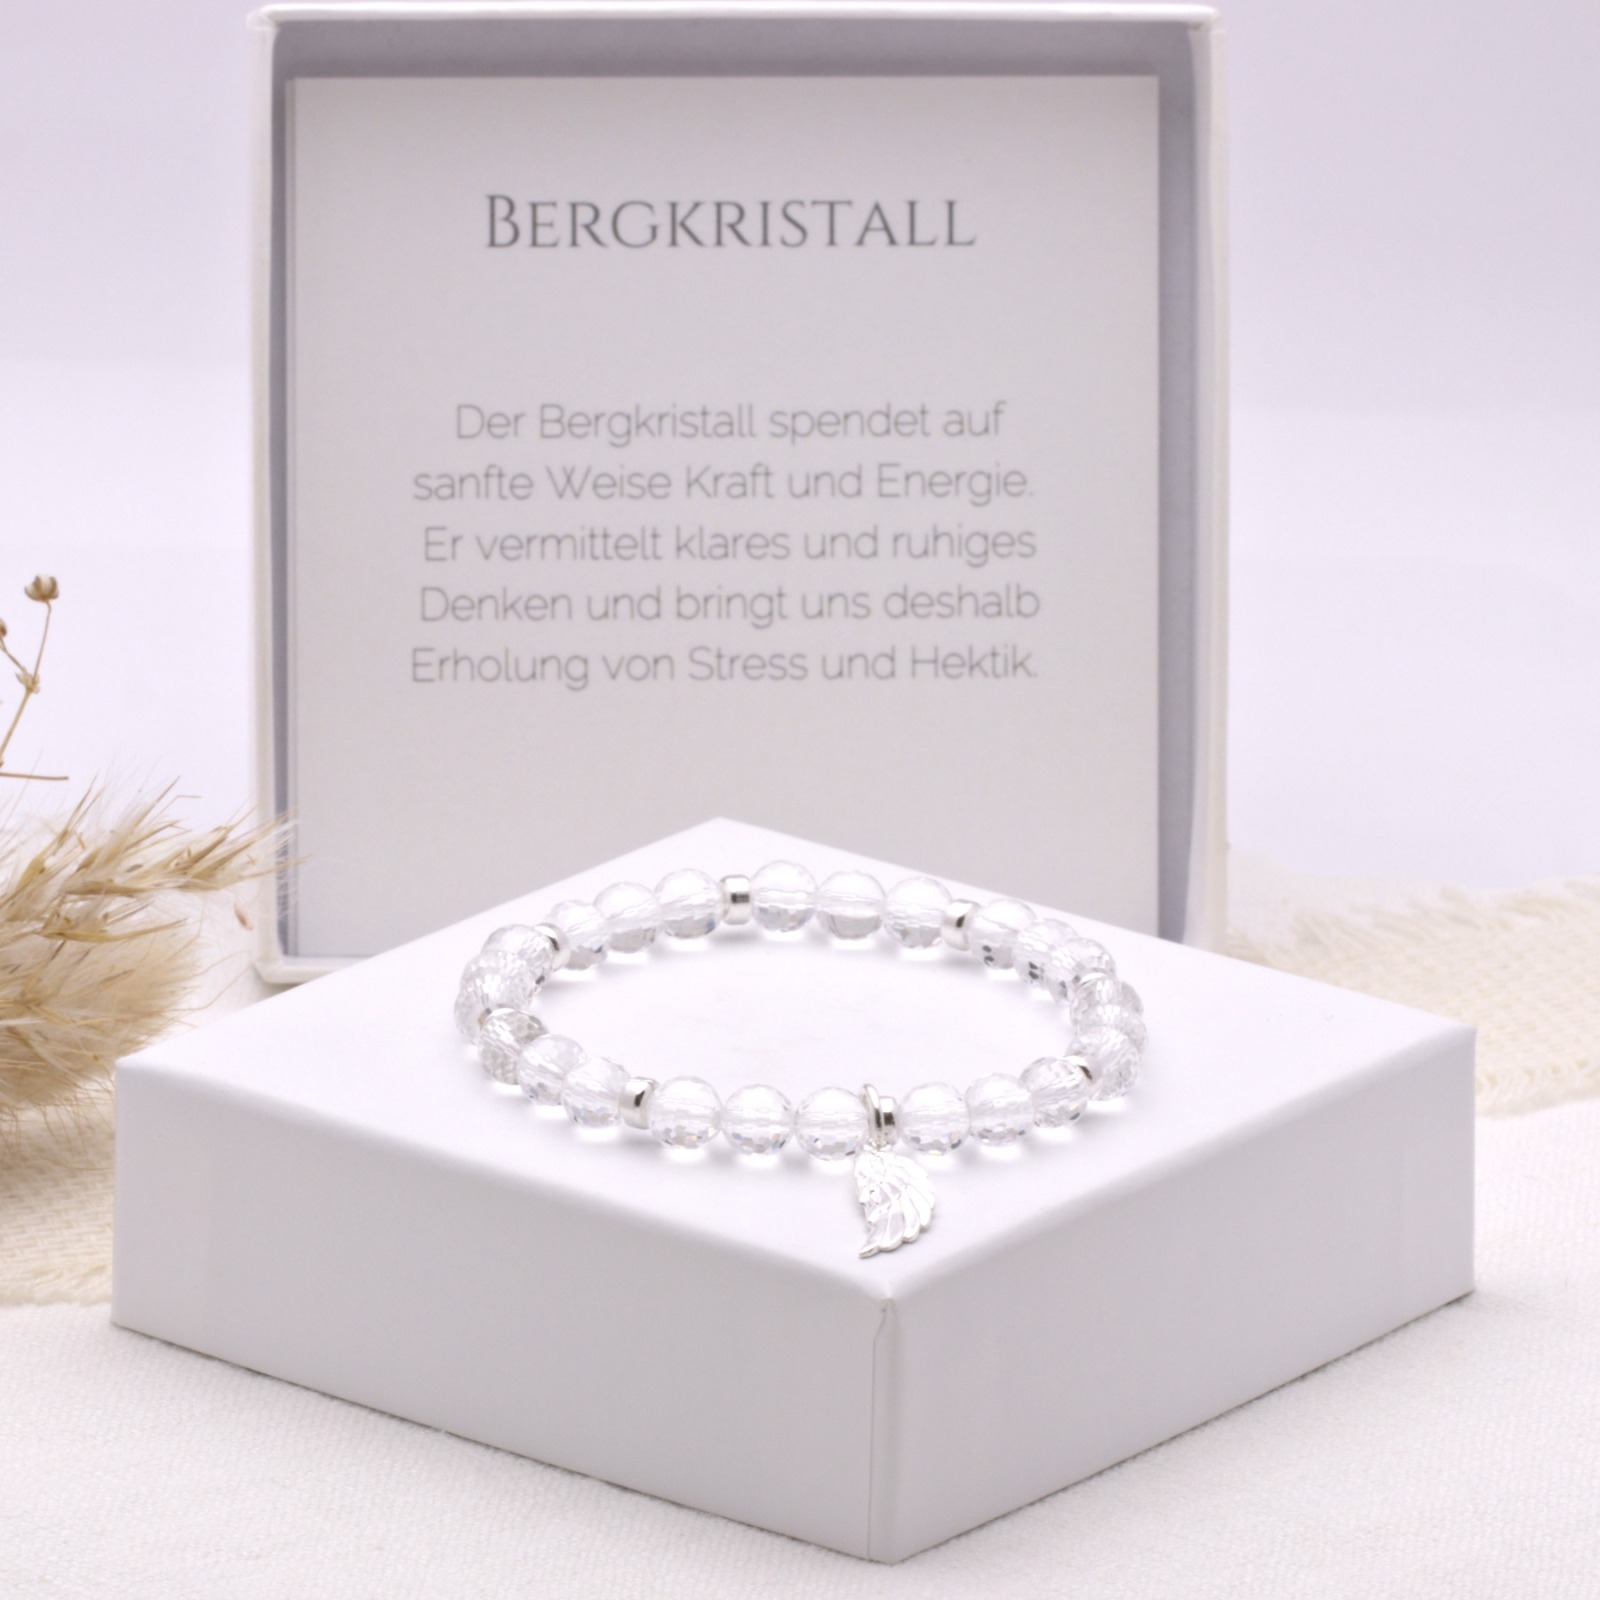 Bergkristall Armband Frauen mit Engelsflügel, 925er Silber, handmade, perfektes Geschenk zum